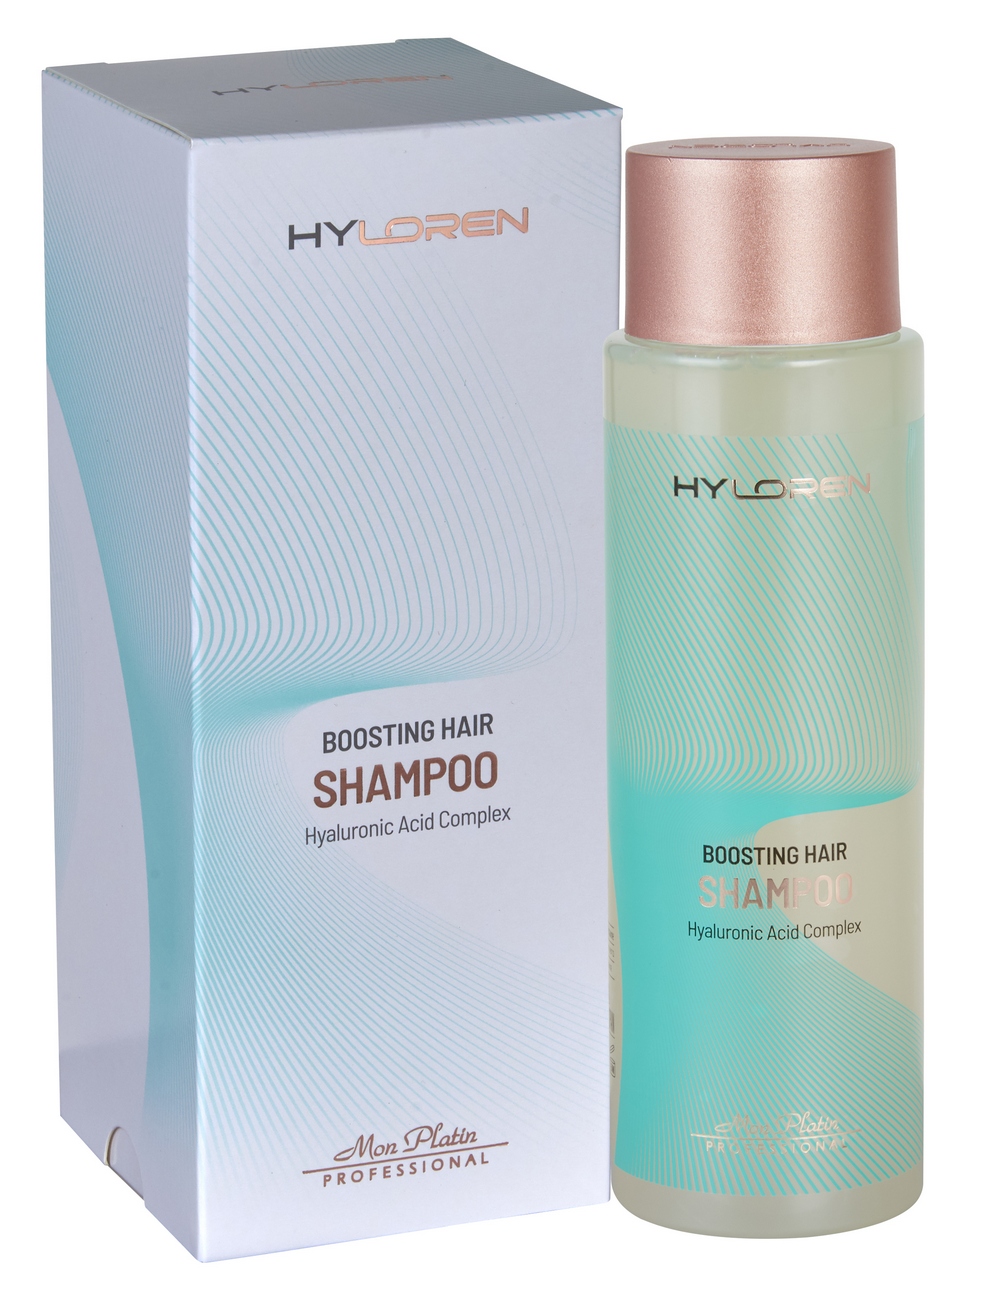 Hy Loren Premium No1 Hair Boosting Shampoo for thin, sparse and brittle hair